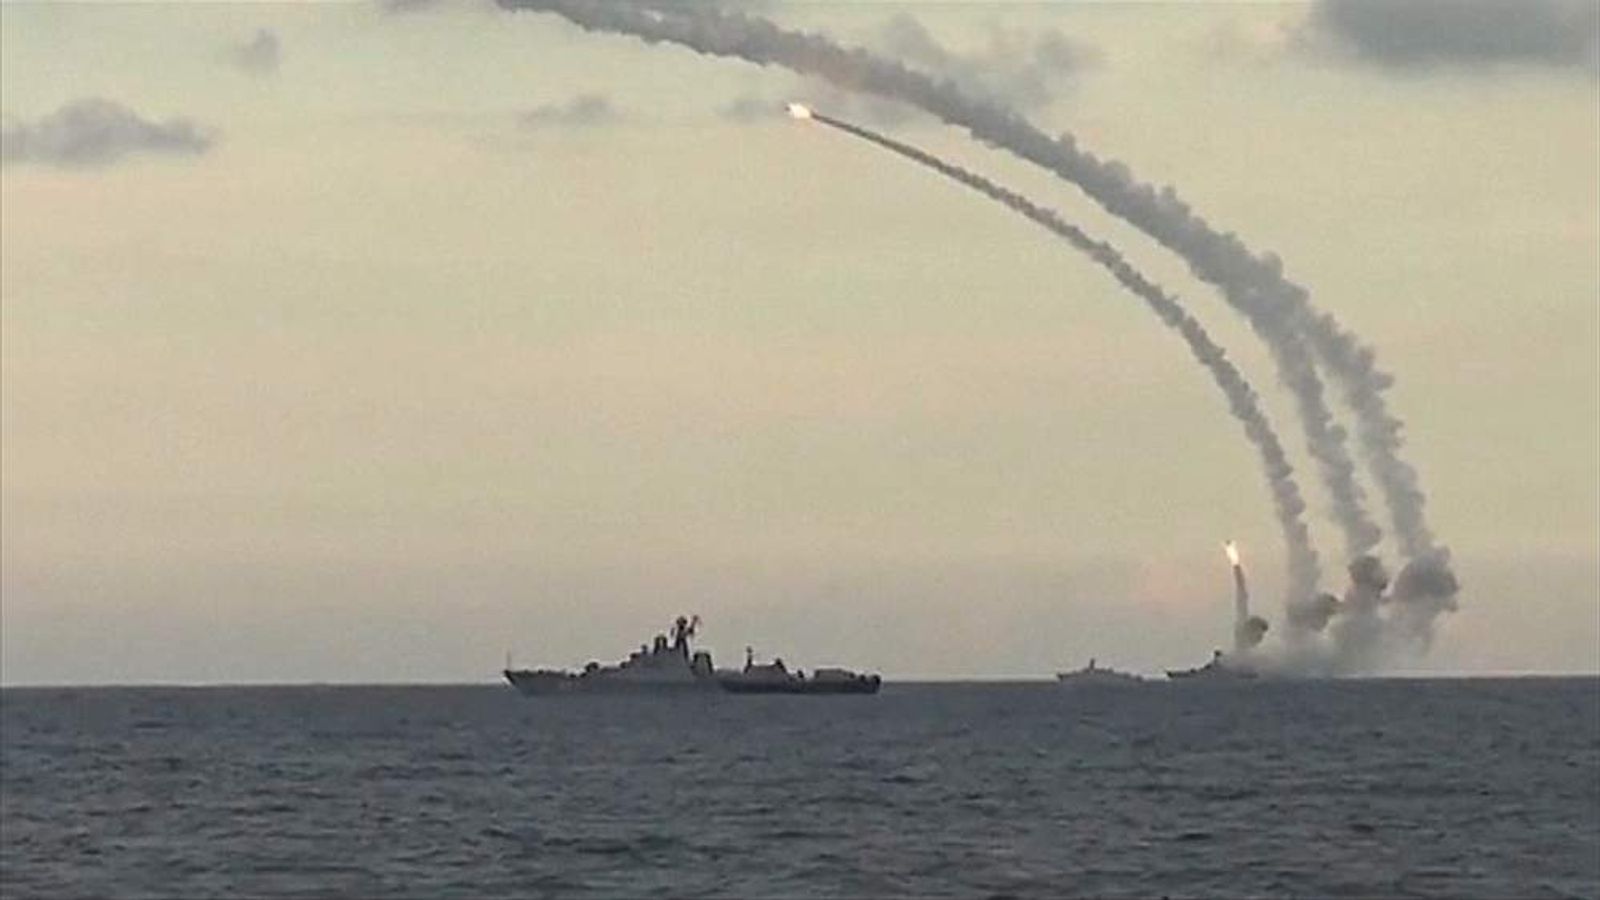 kosatka cruise missile